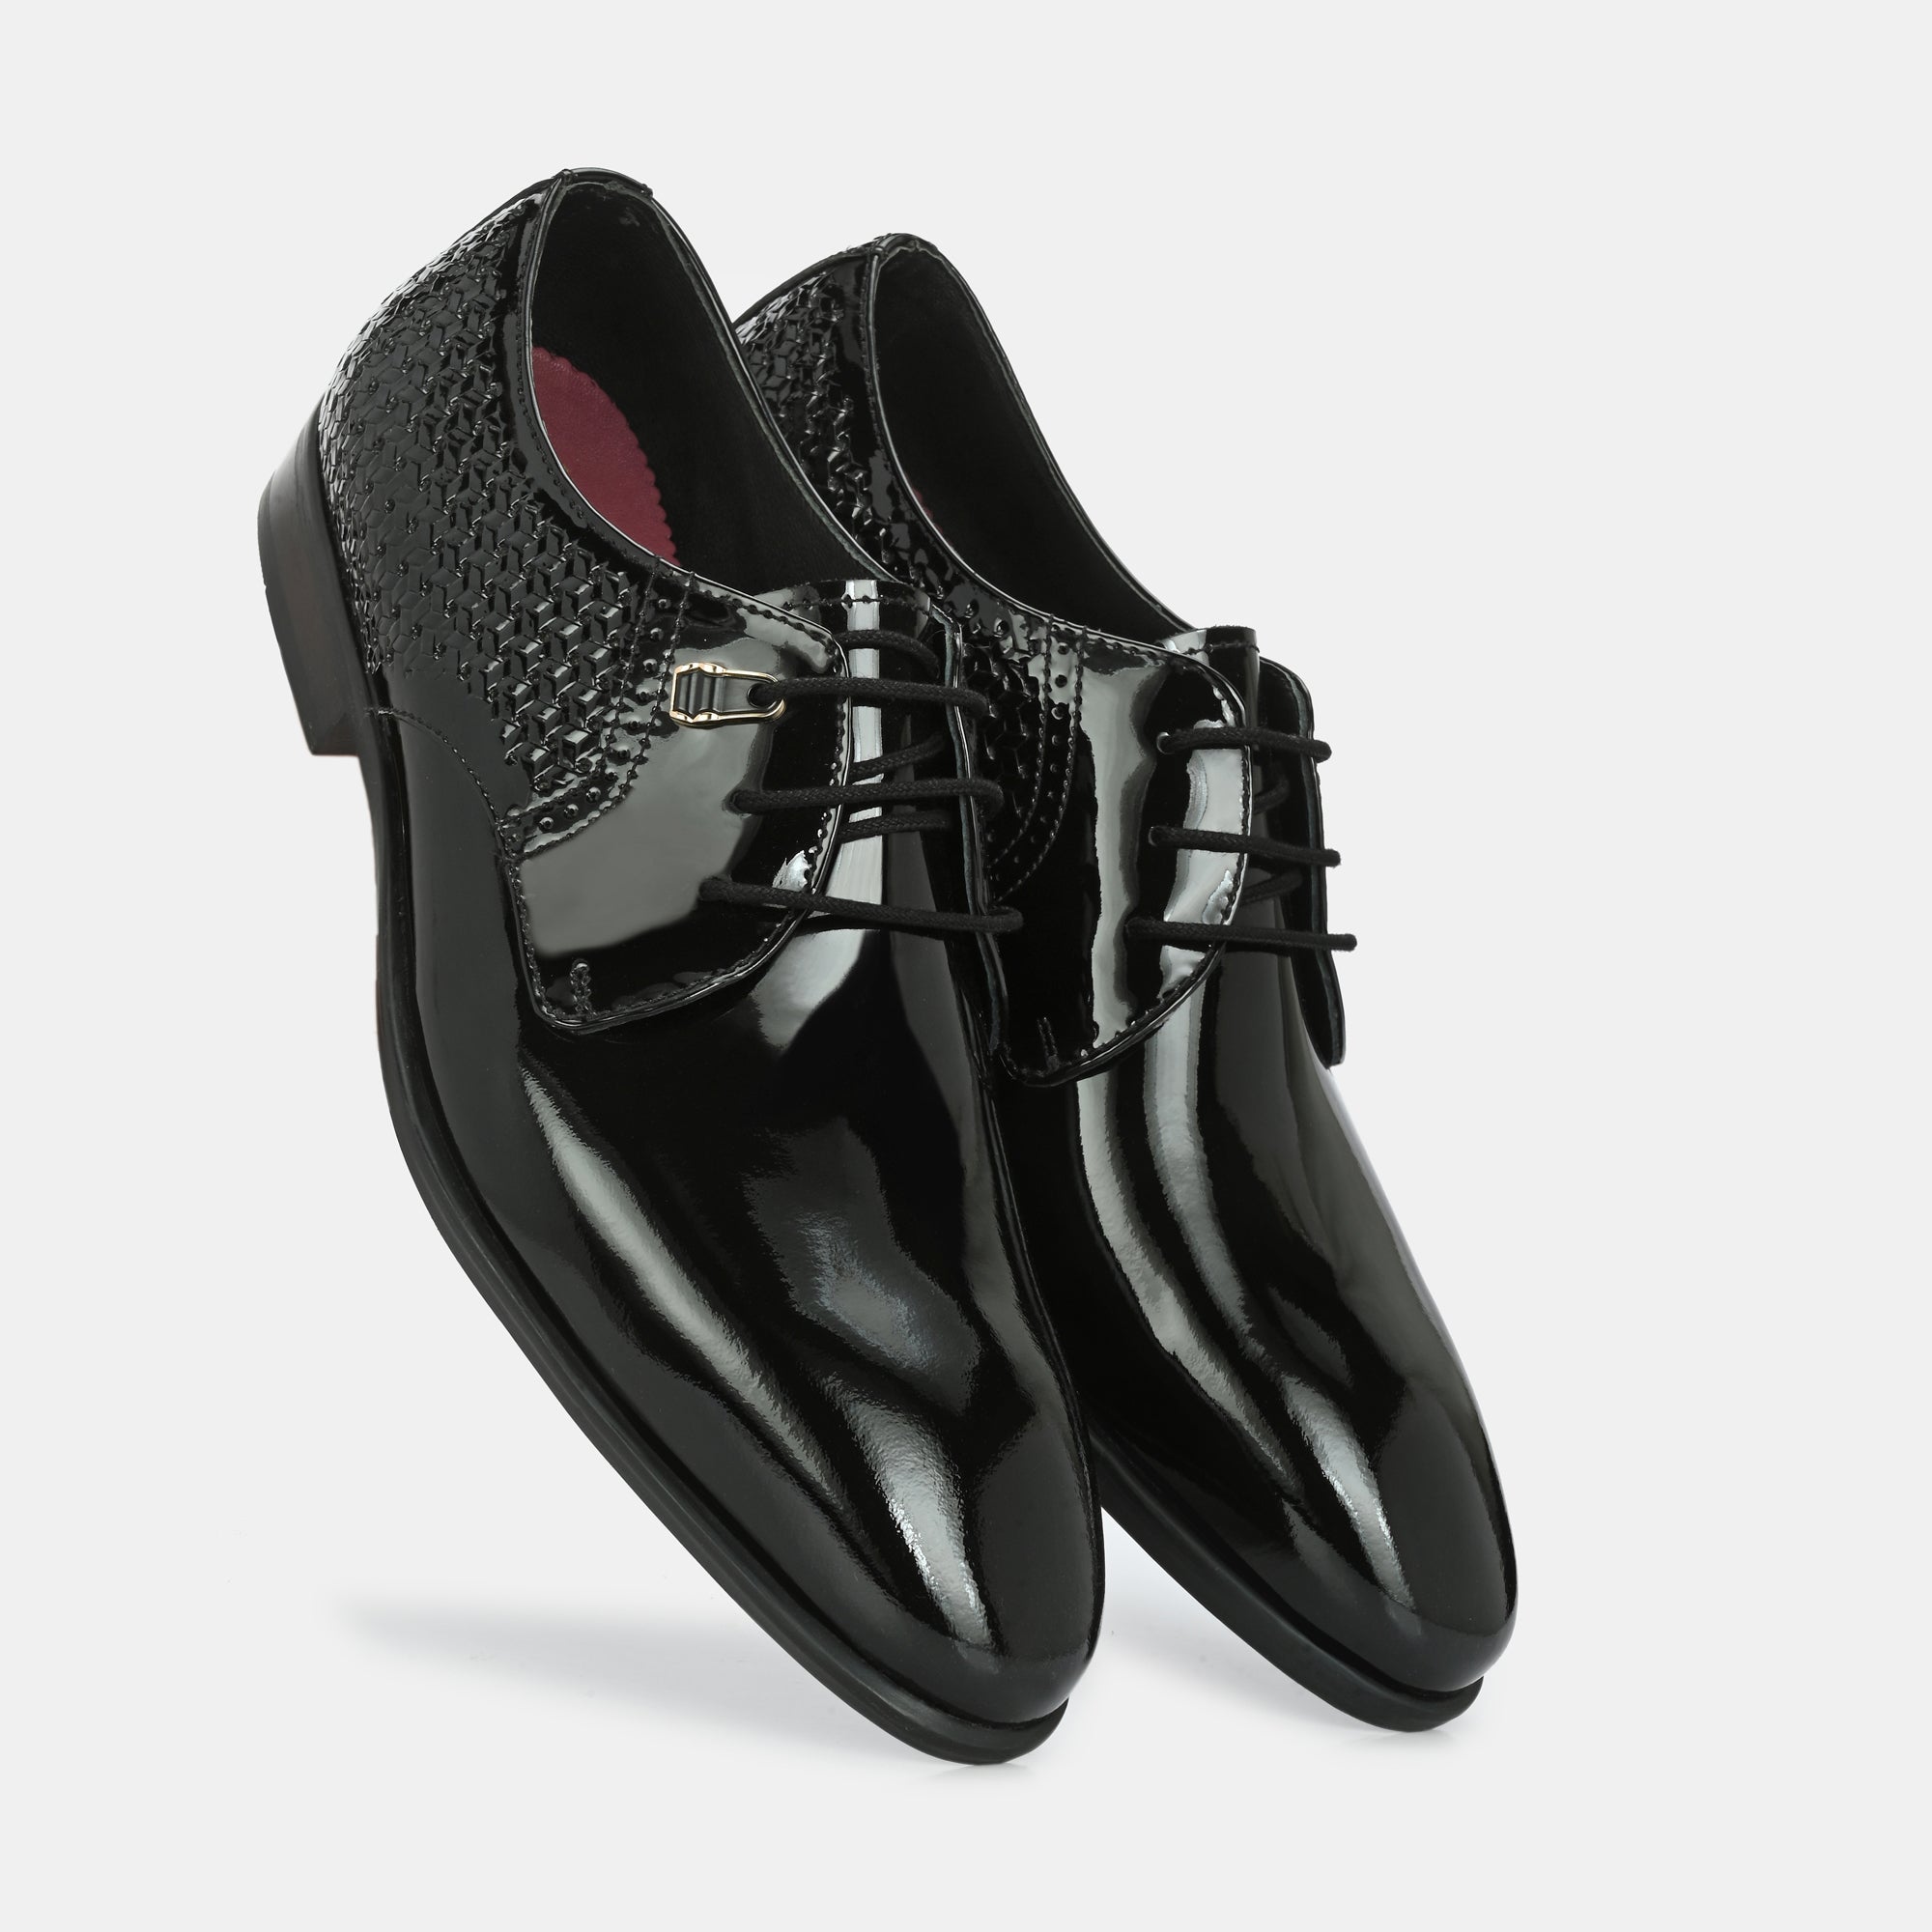 Chekich Black Sole Black Patent Men Shoes